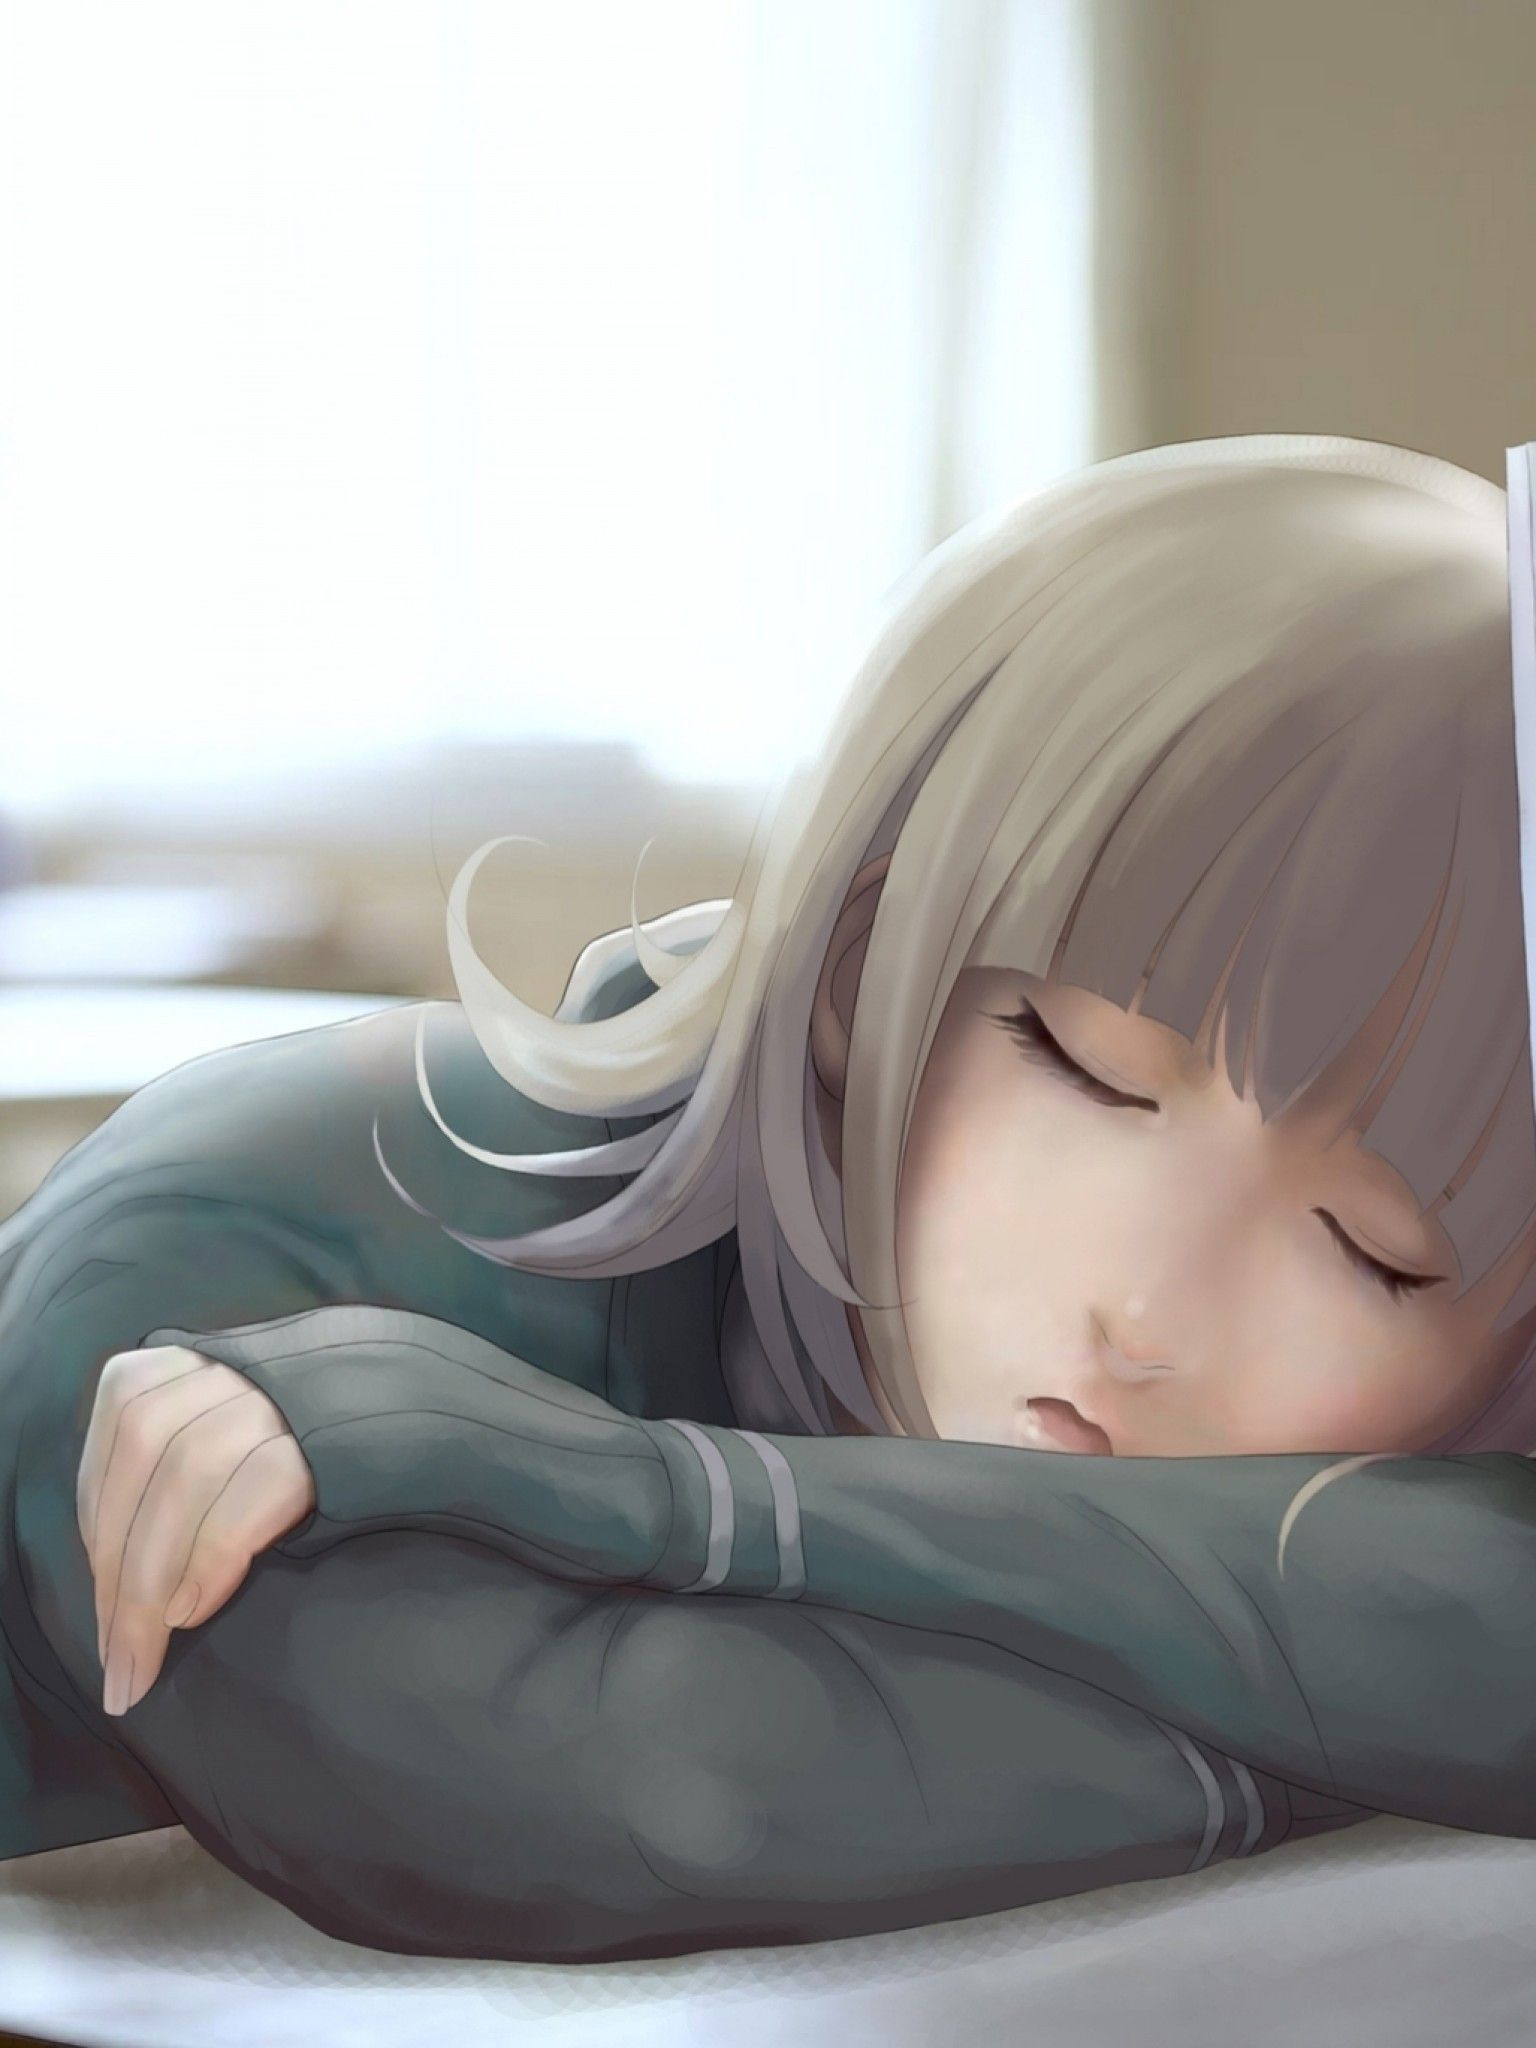 Download 1536x2048 Anime Girl, Sleeping In Class Wallpaper for Apple iPad Mini, Apple IPad 4